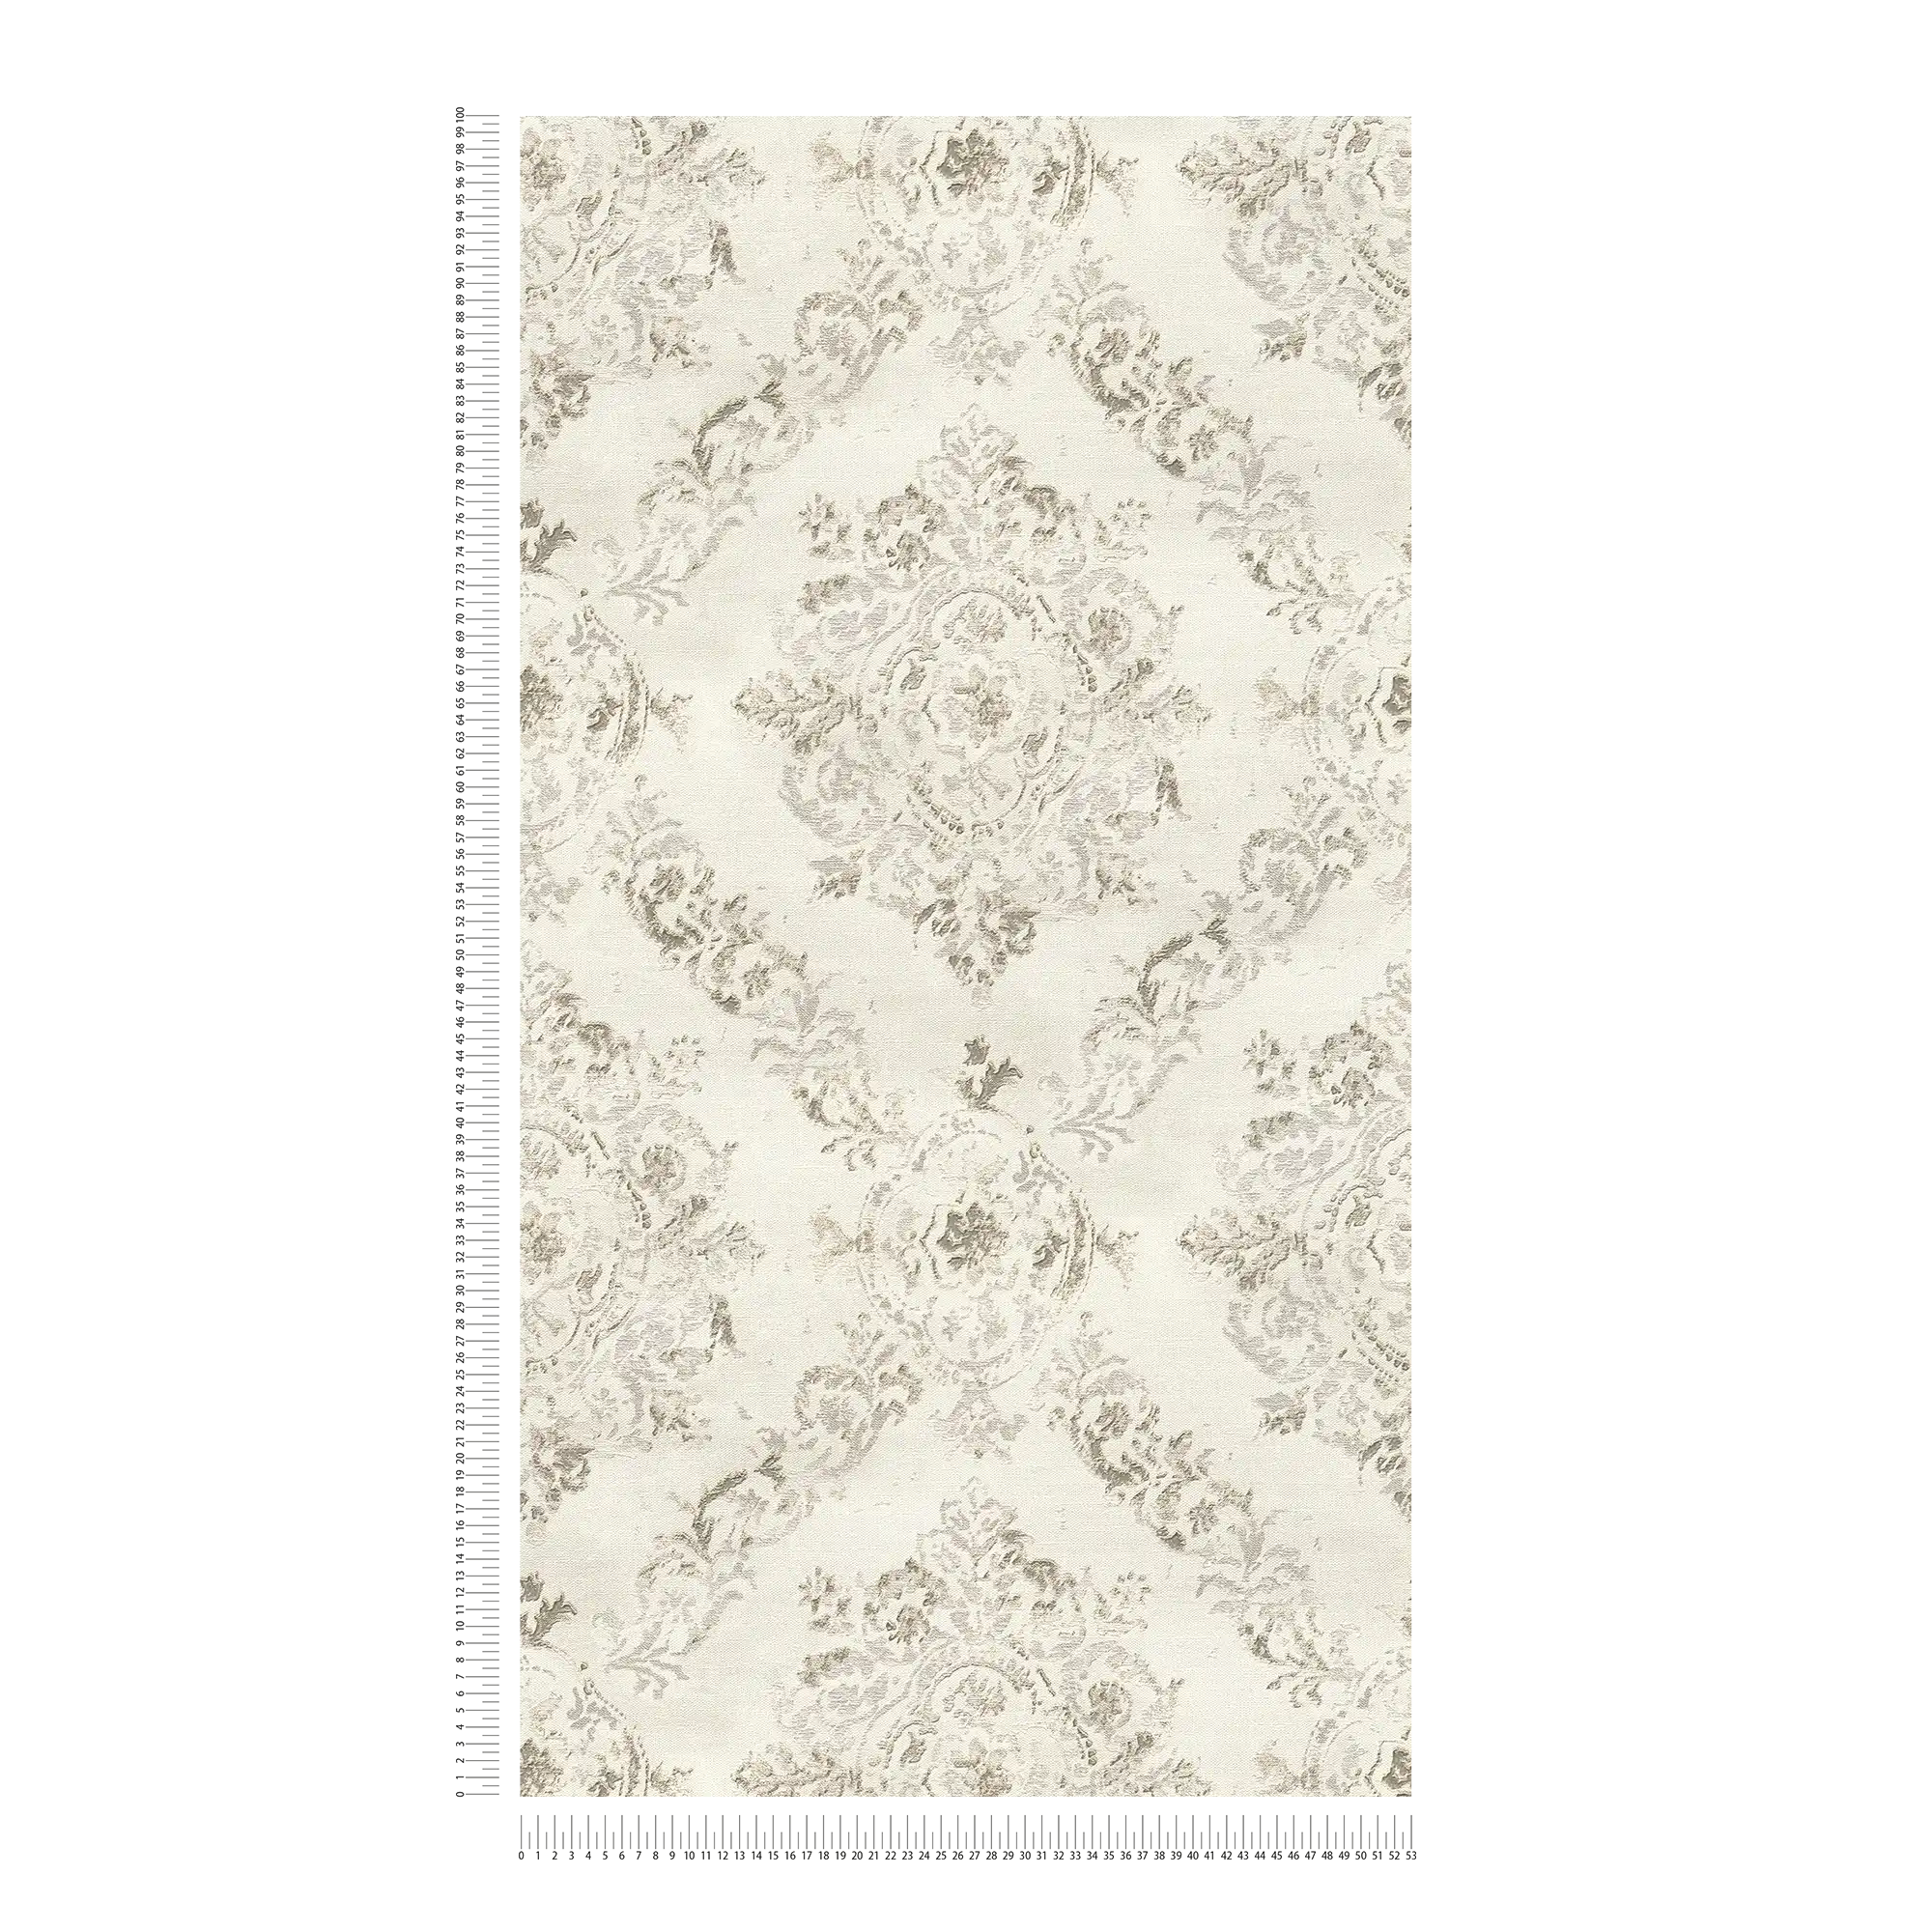             Carta da parati ornamentale con struttura in lino dall'aspetto vintage - metallizzato, crema, beige
        